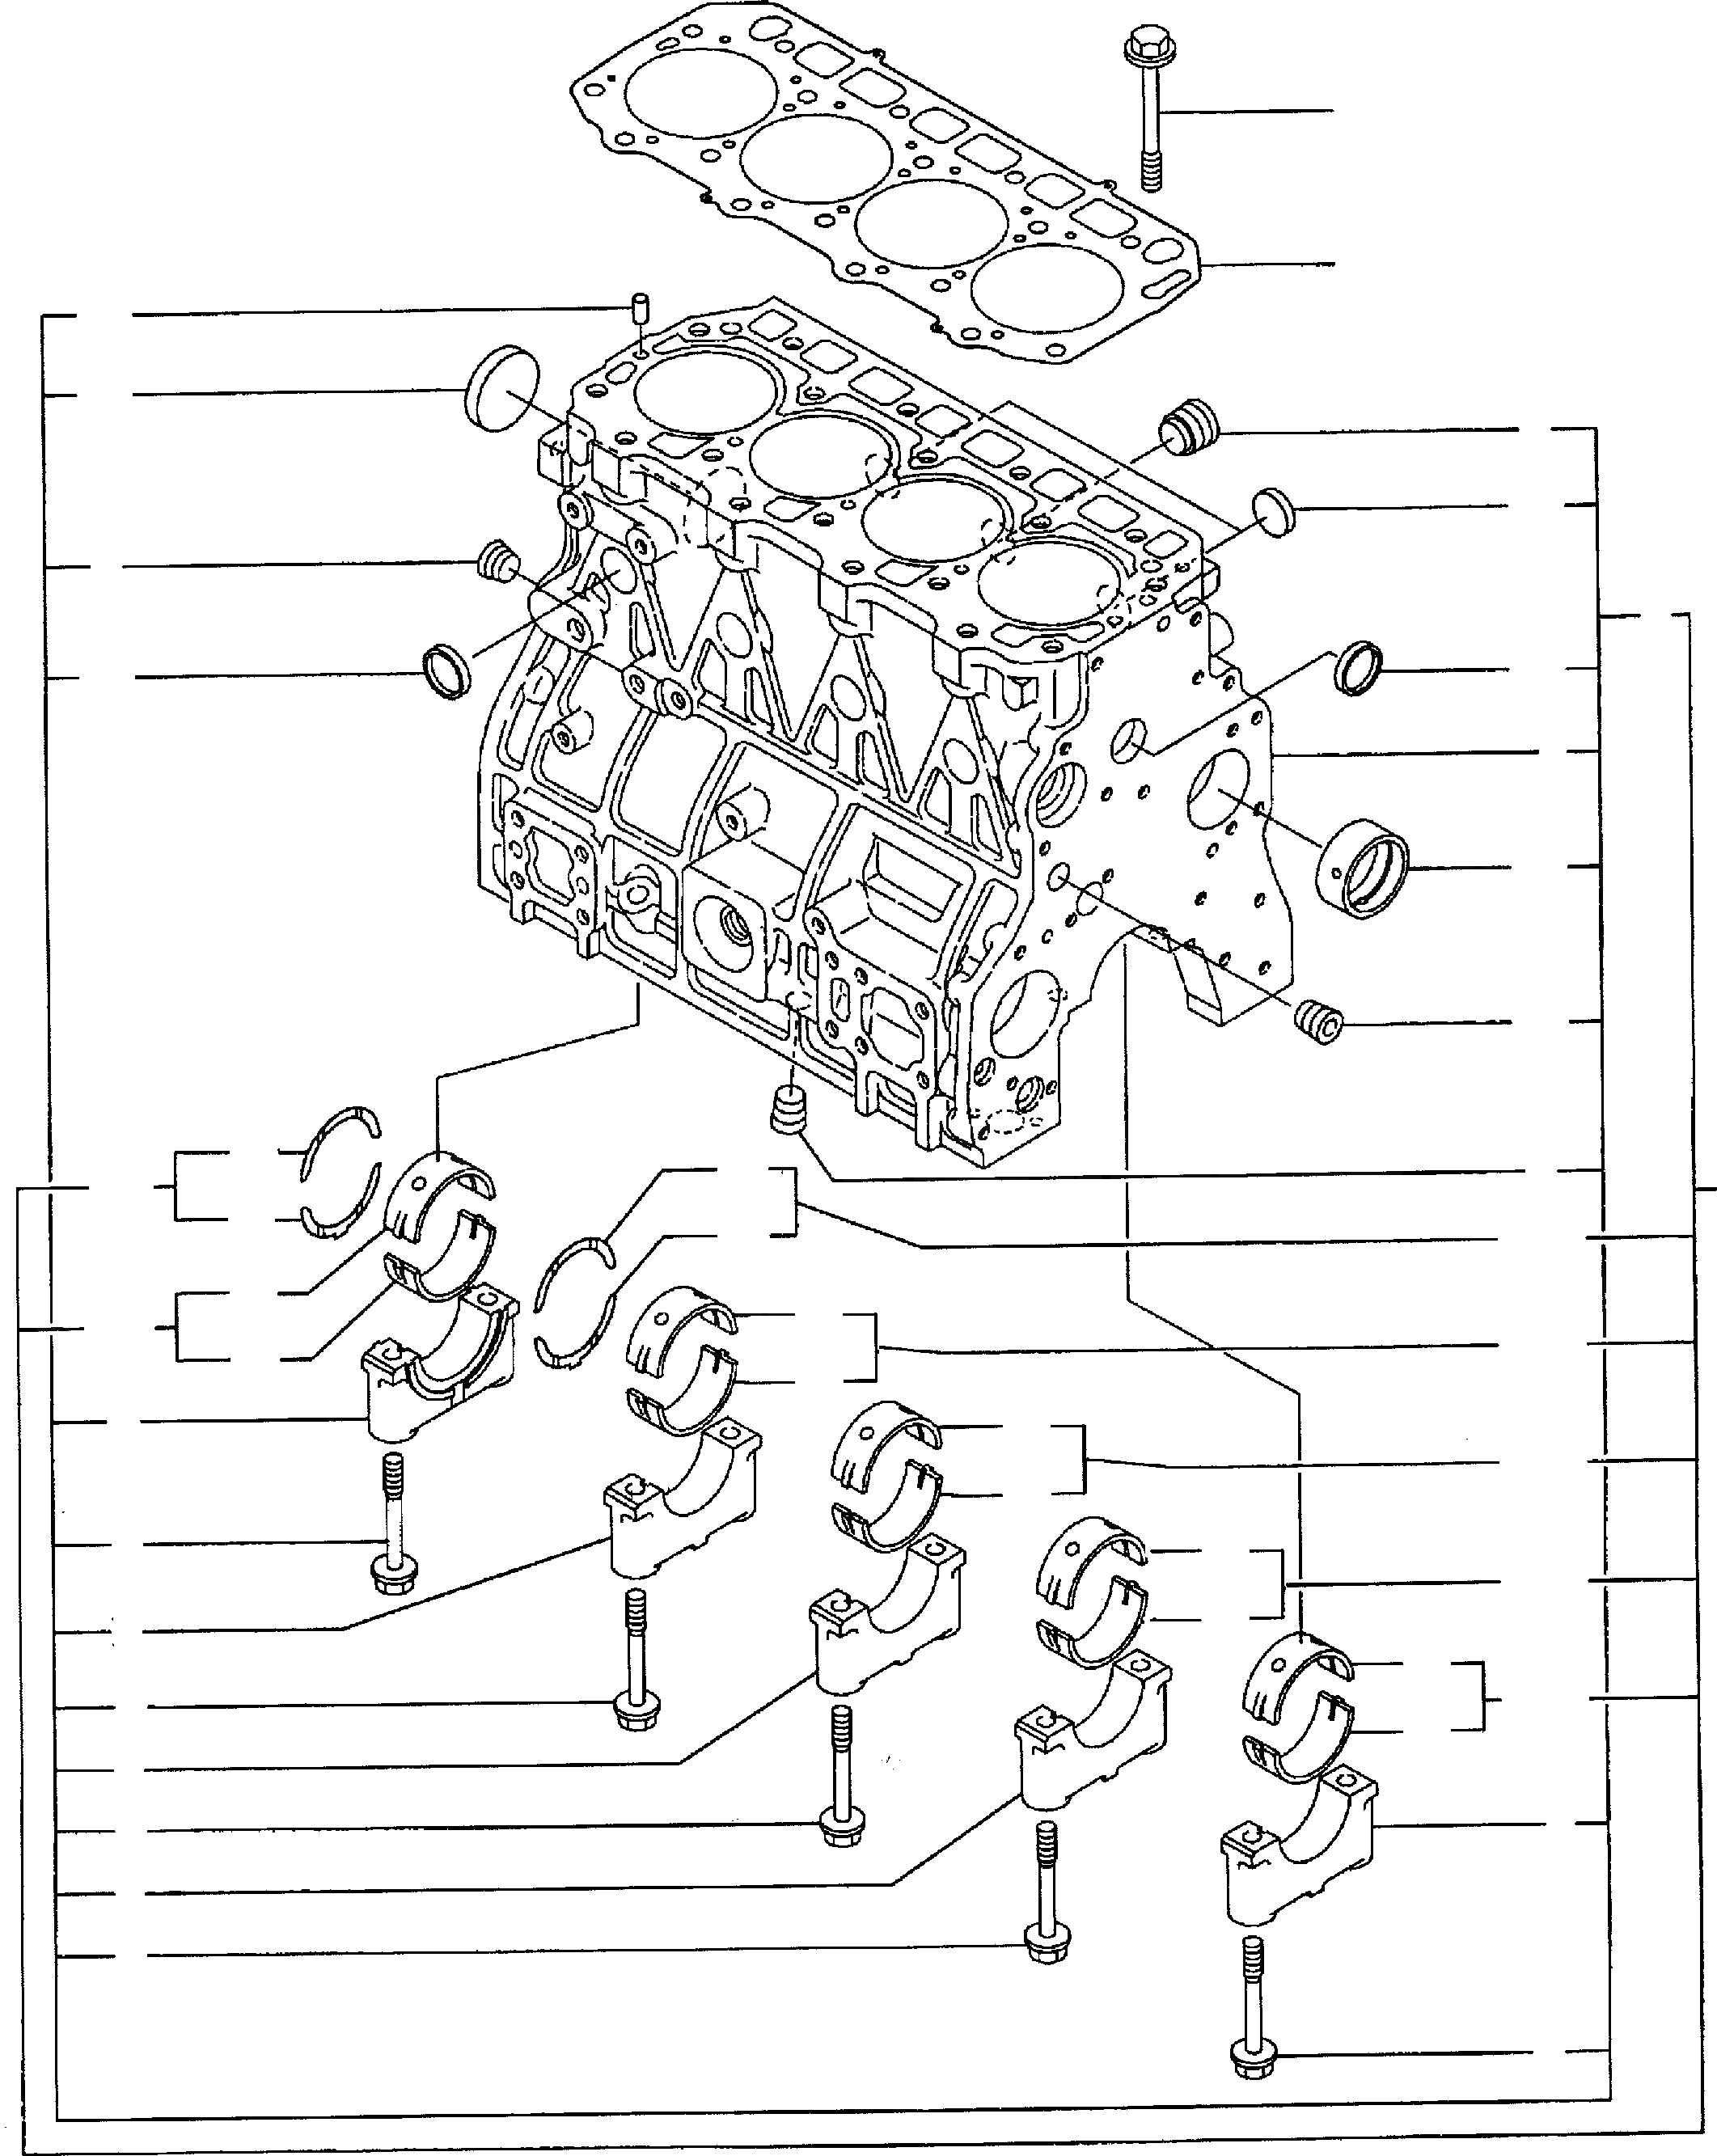 Схема запчастей Komatsu WA65-3 - БЛОК ЦИЛИНДРОВ И ATTACHING ЧАСТИ ДВИГАТЕЛЬ, КРЕПЛЕНИЕ ДВИГАТЕЛЯ